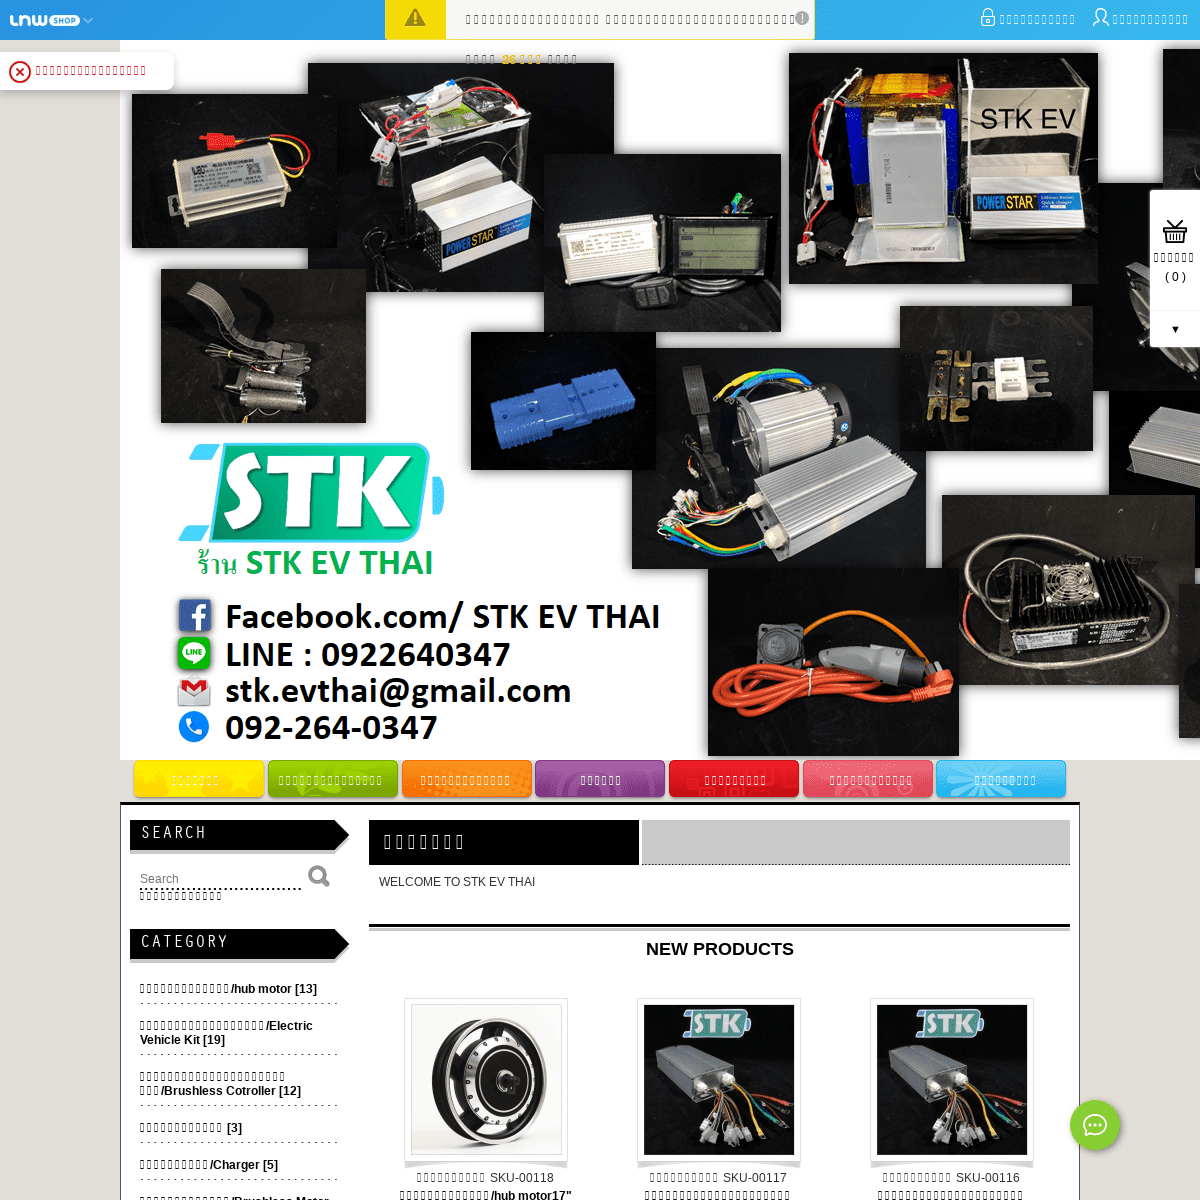 STK EV : Inspired by LnwShop.com